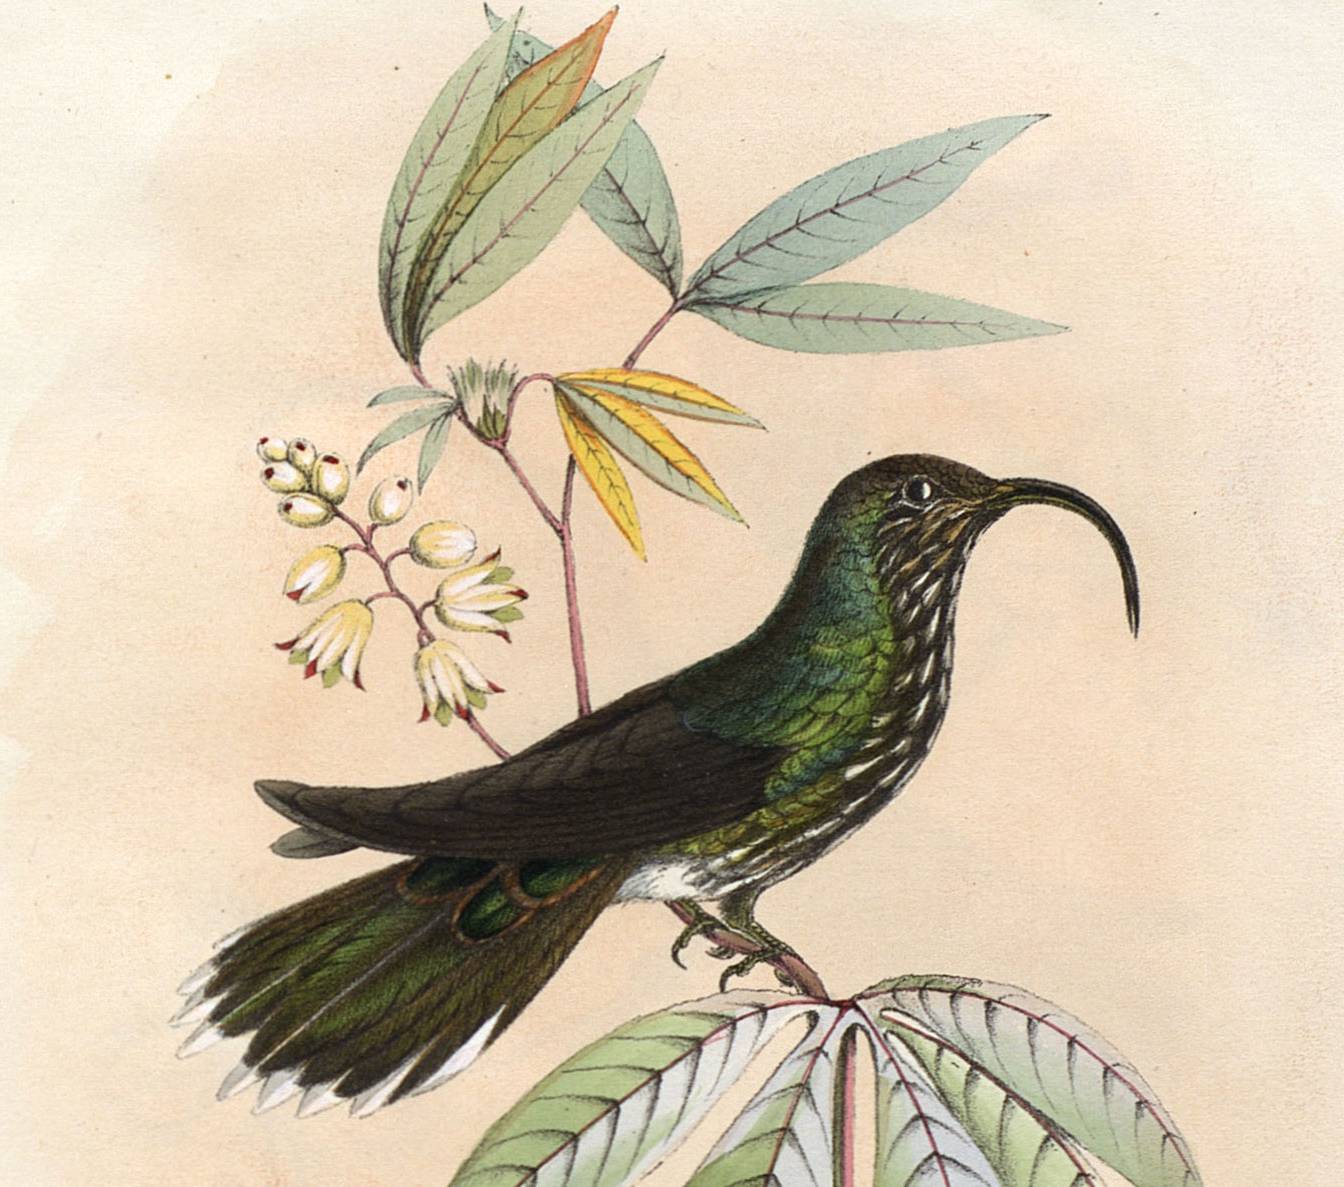 Histoire naturelle des oiseaux-mouches et colibris, Etienne Mulsant, cote 360 ©Musée des confluences